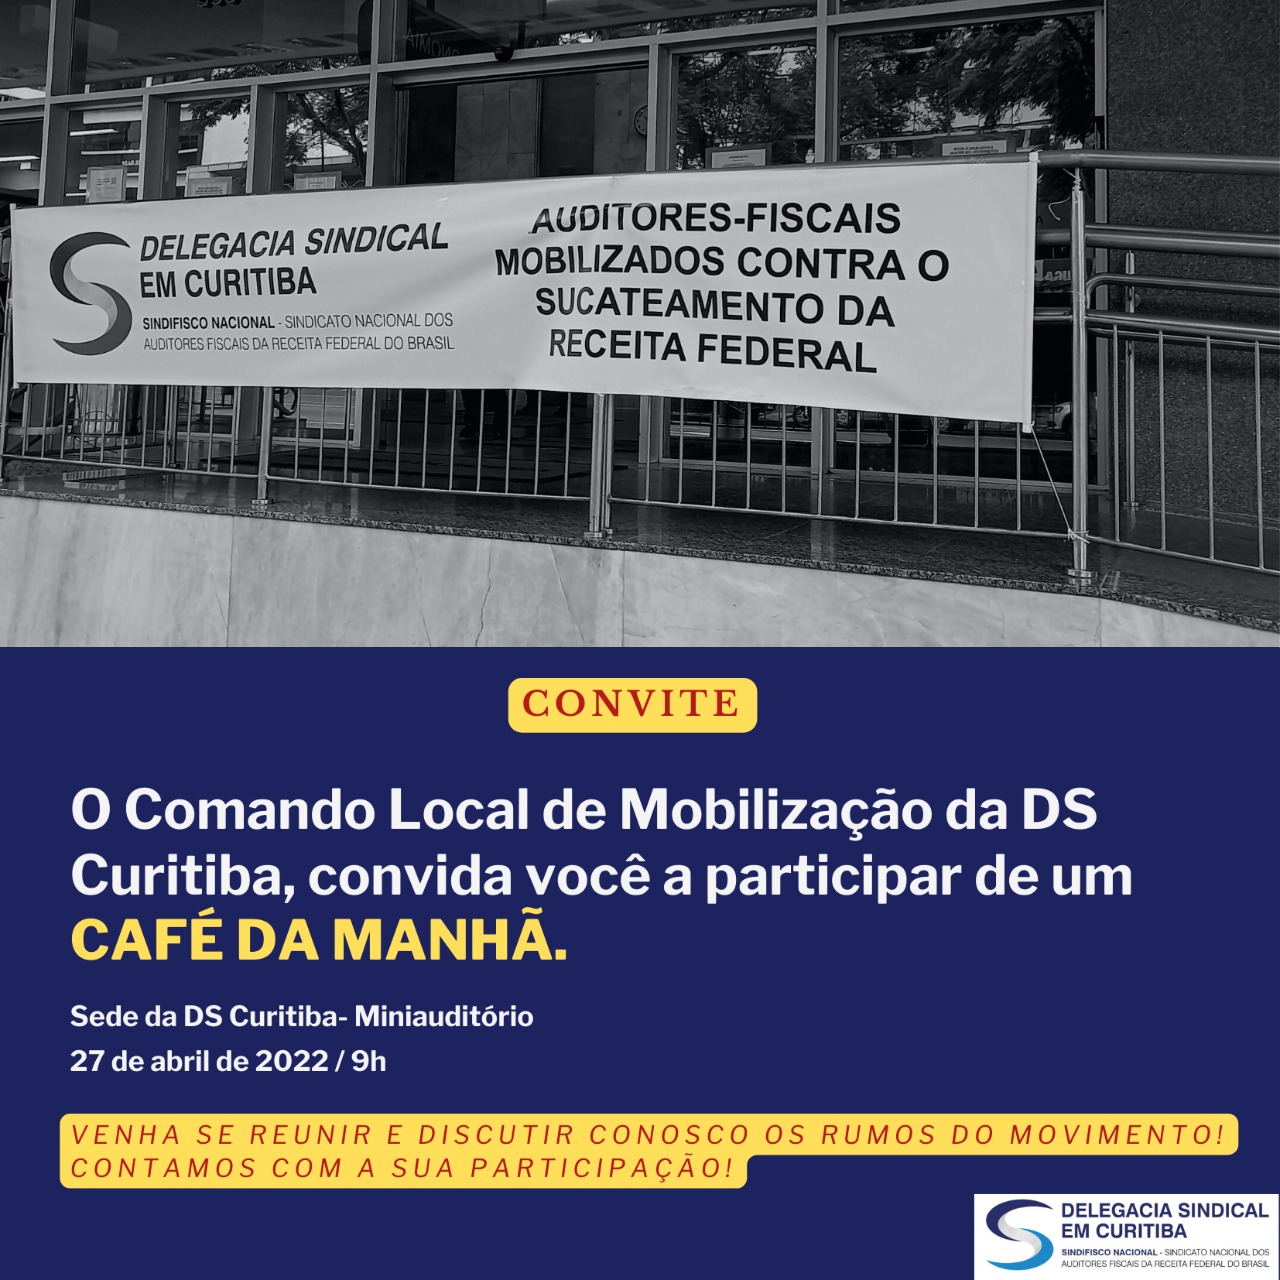 O Comando Local de Mobilização da DS Curitiba, convida você a participar de um café da manhã!